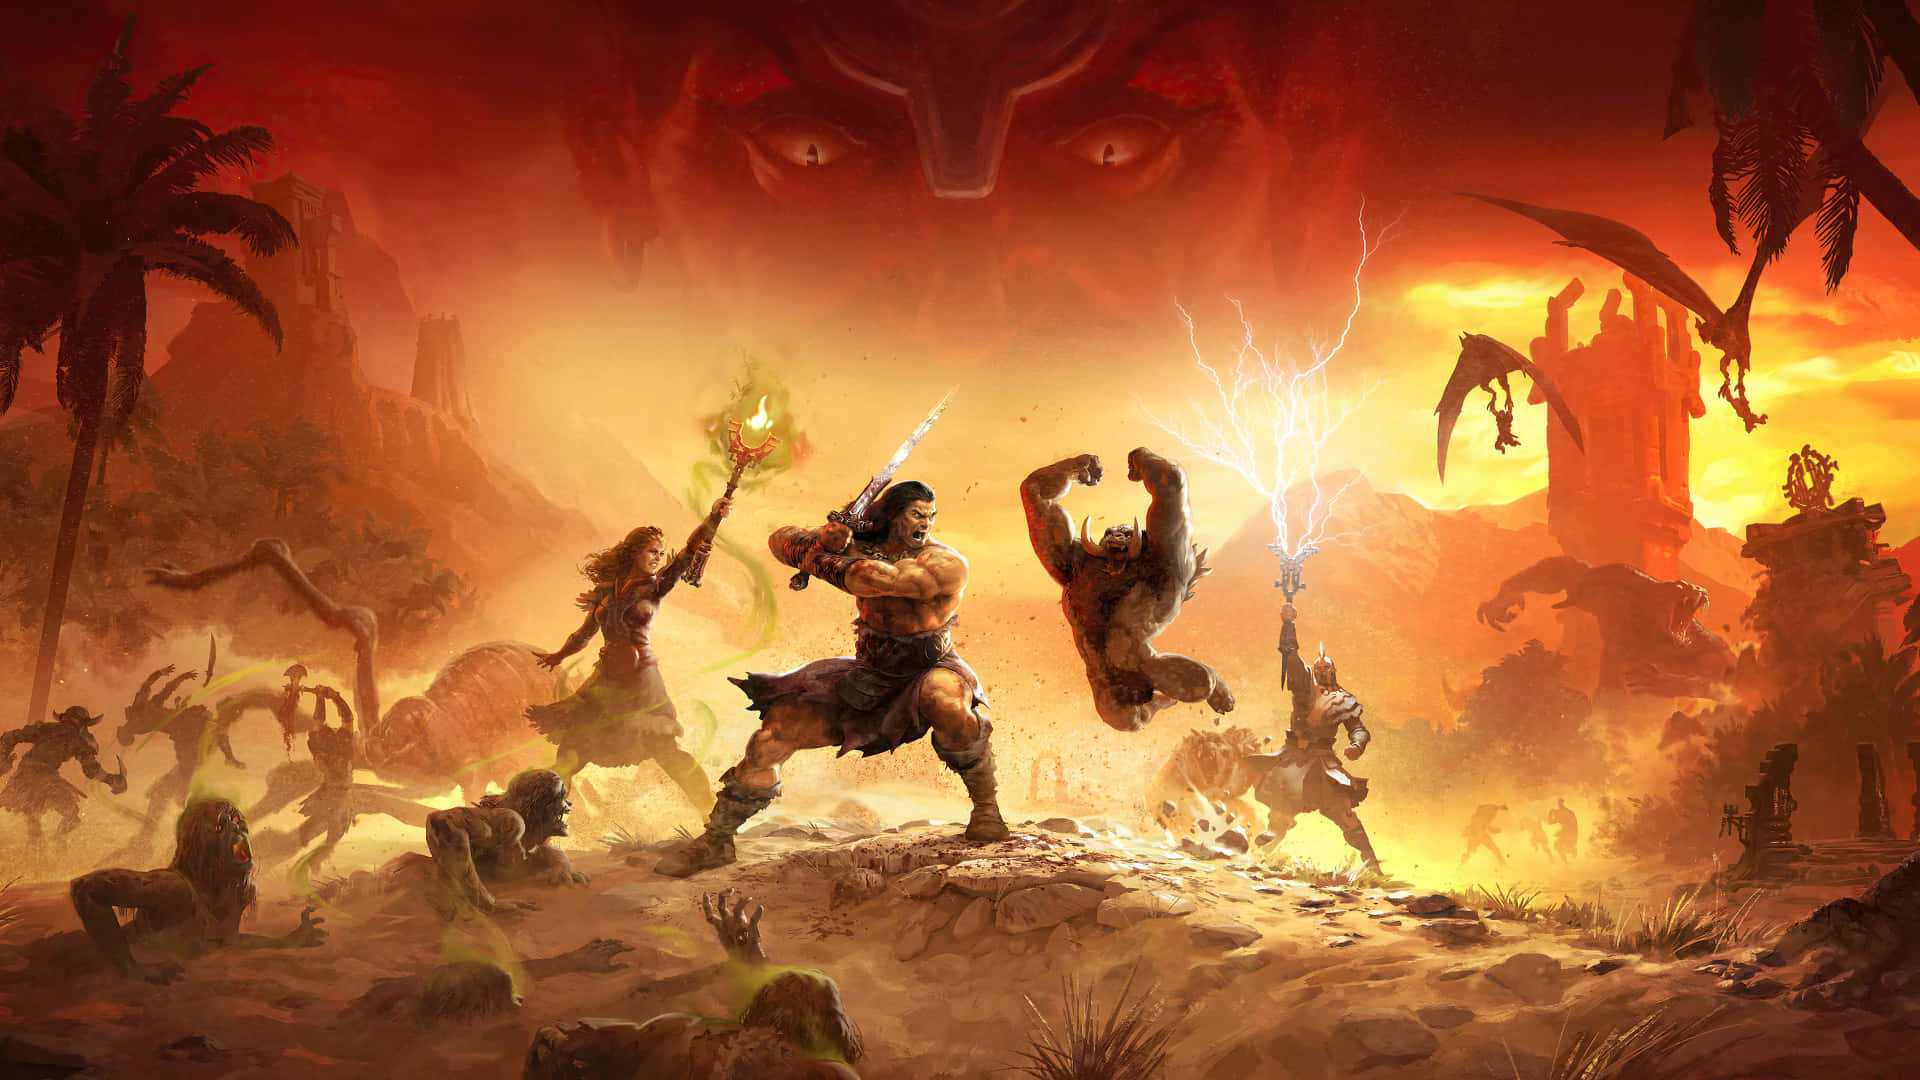 Enthralling Fantasy World - Epic Battle Scene Wallpaper